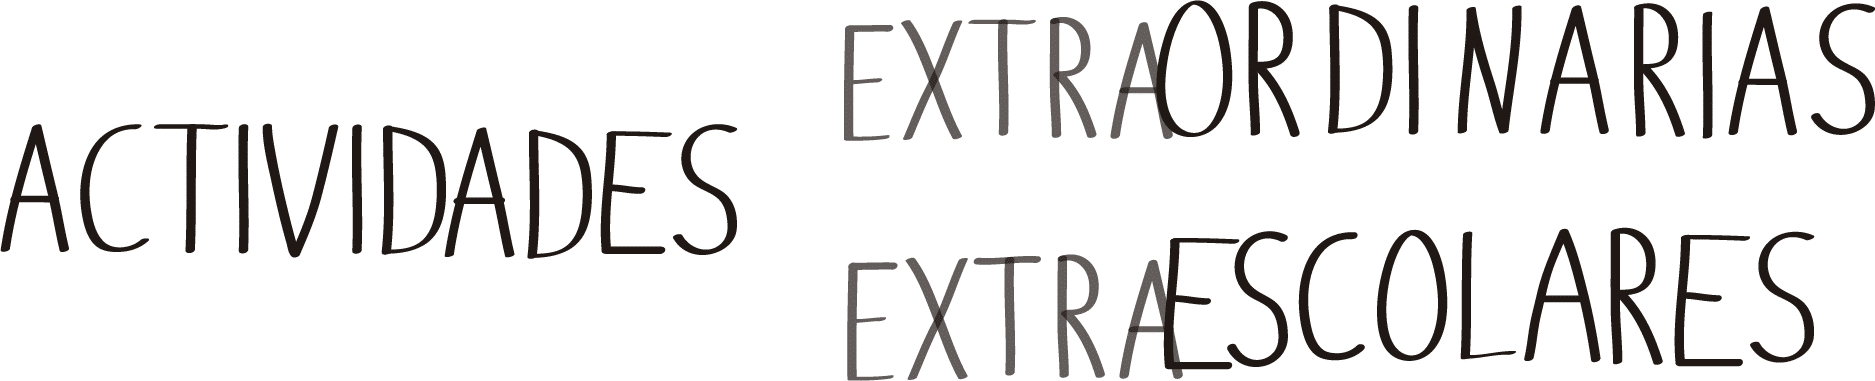 Actividades extraescolares y actividades extraodinarias